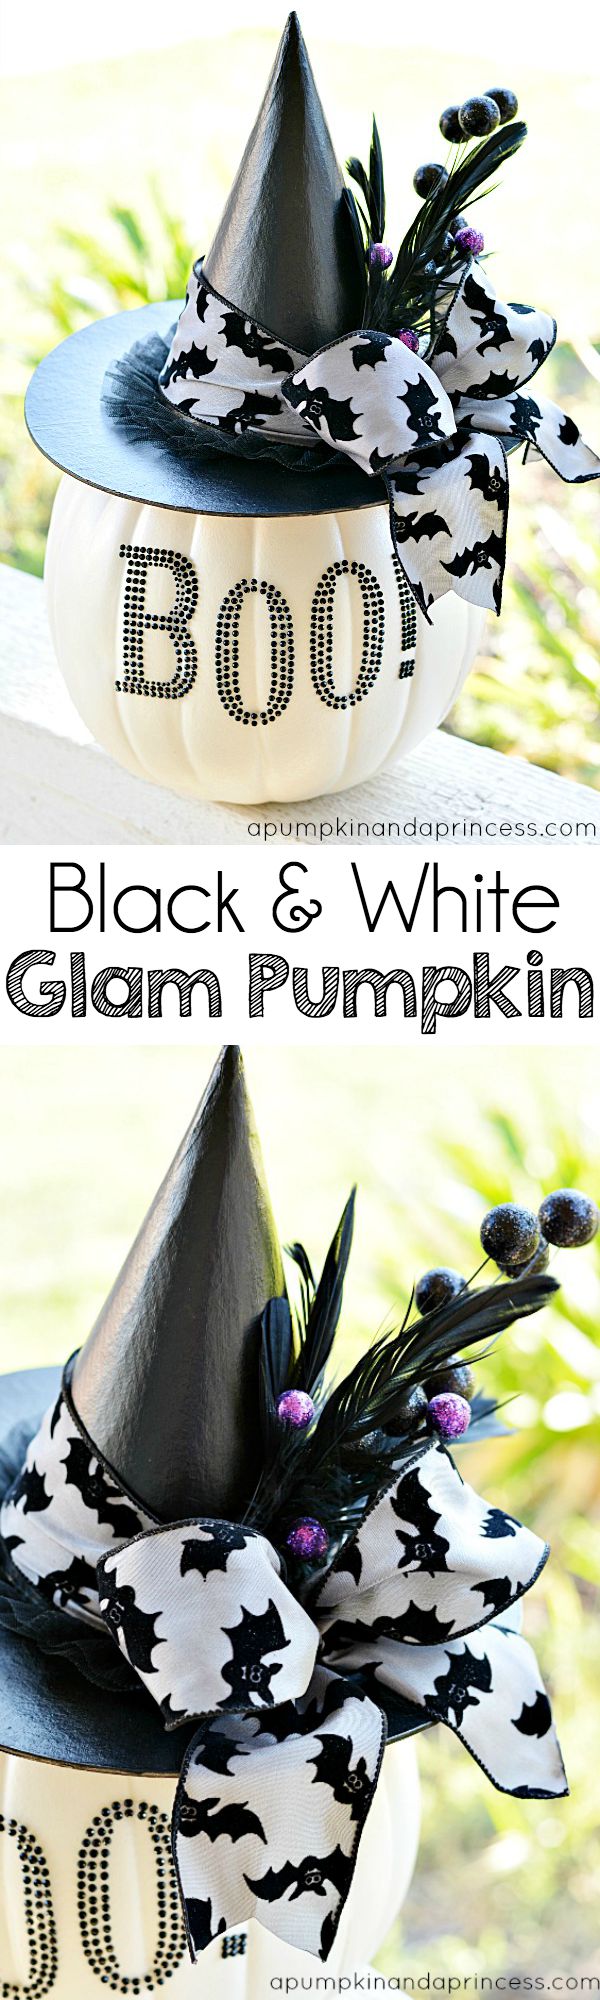 glam pumpkin, halloween, witch pumpkin, beautiful pumpkin